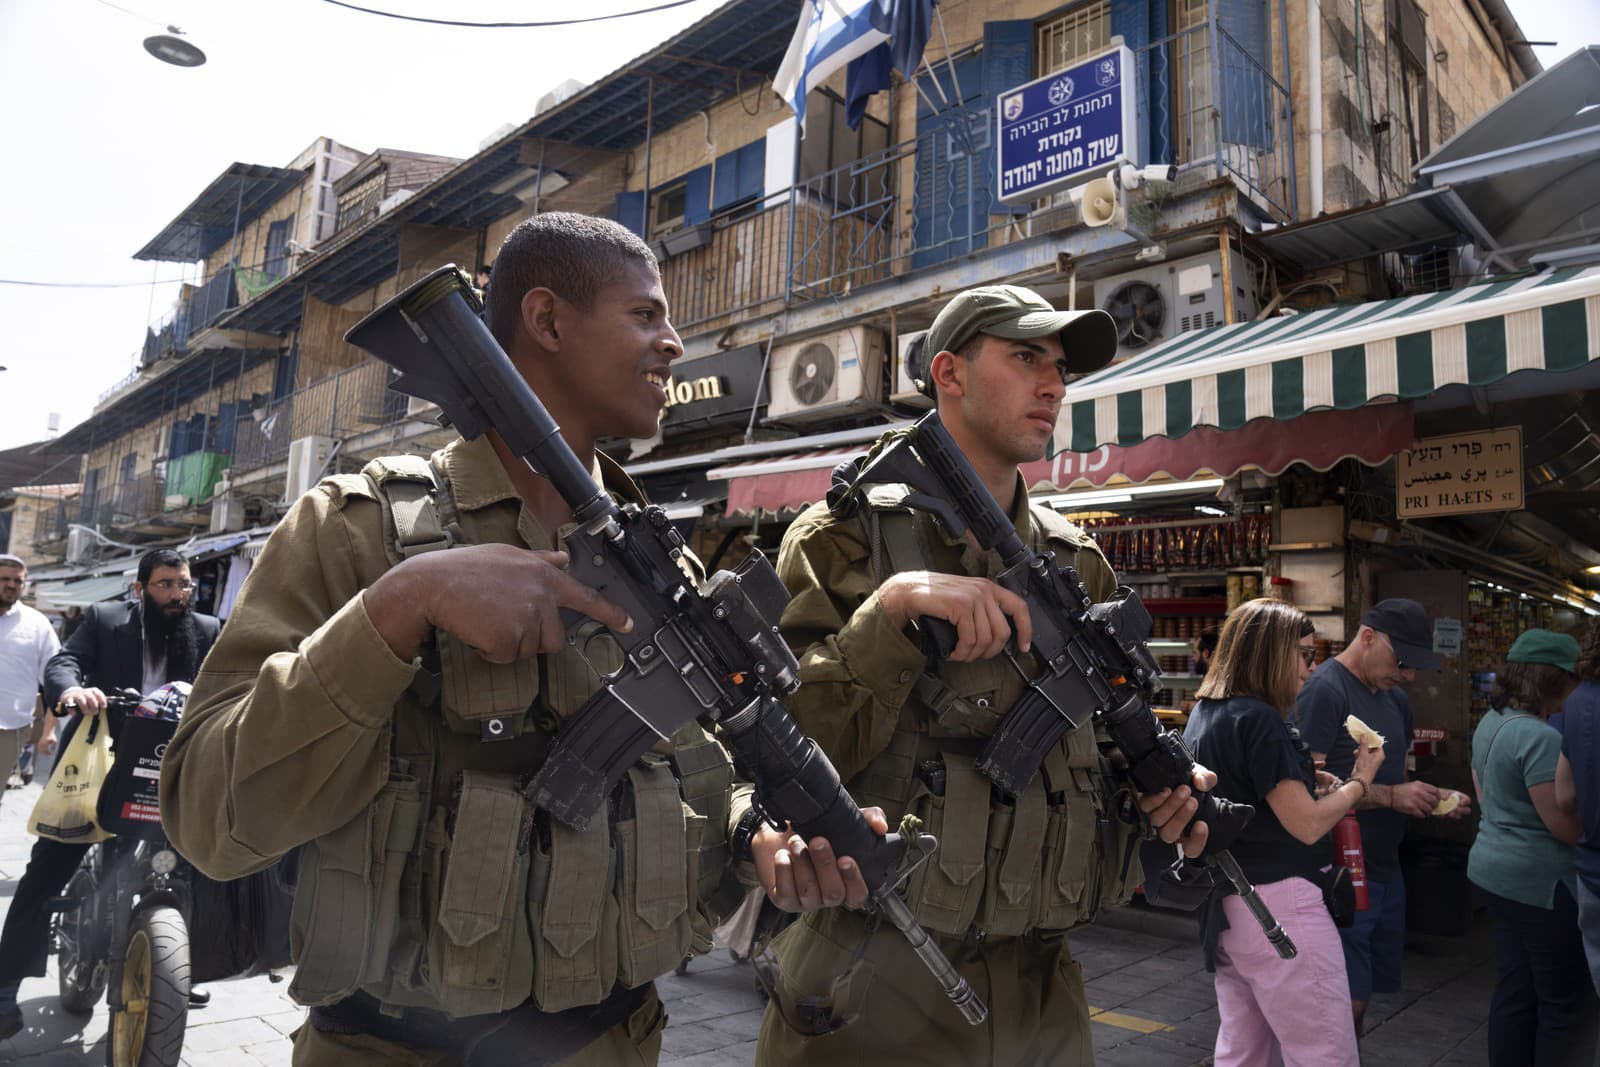 Izraelskí vojaci hliadkujú na trhovisku Mahane Yehuda v Jeruzaleme v rámci zvýšených bezpečnostných opatrení, v nedeľu 3. apríla 2022.